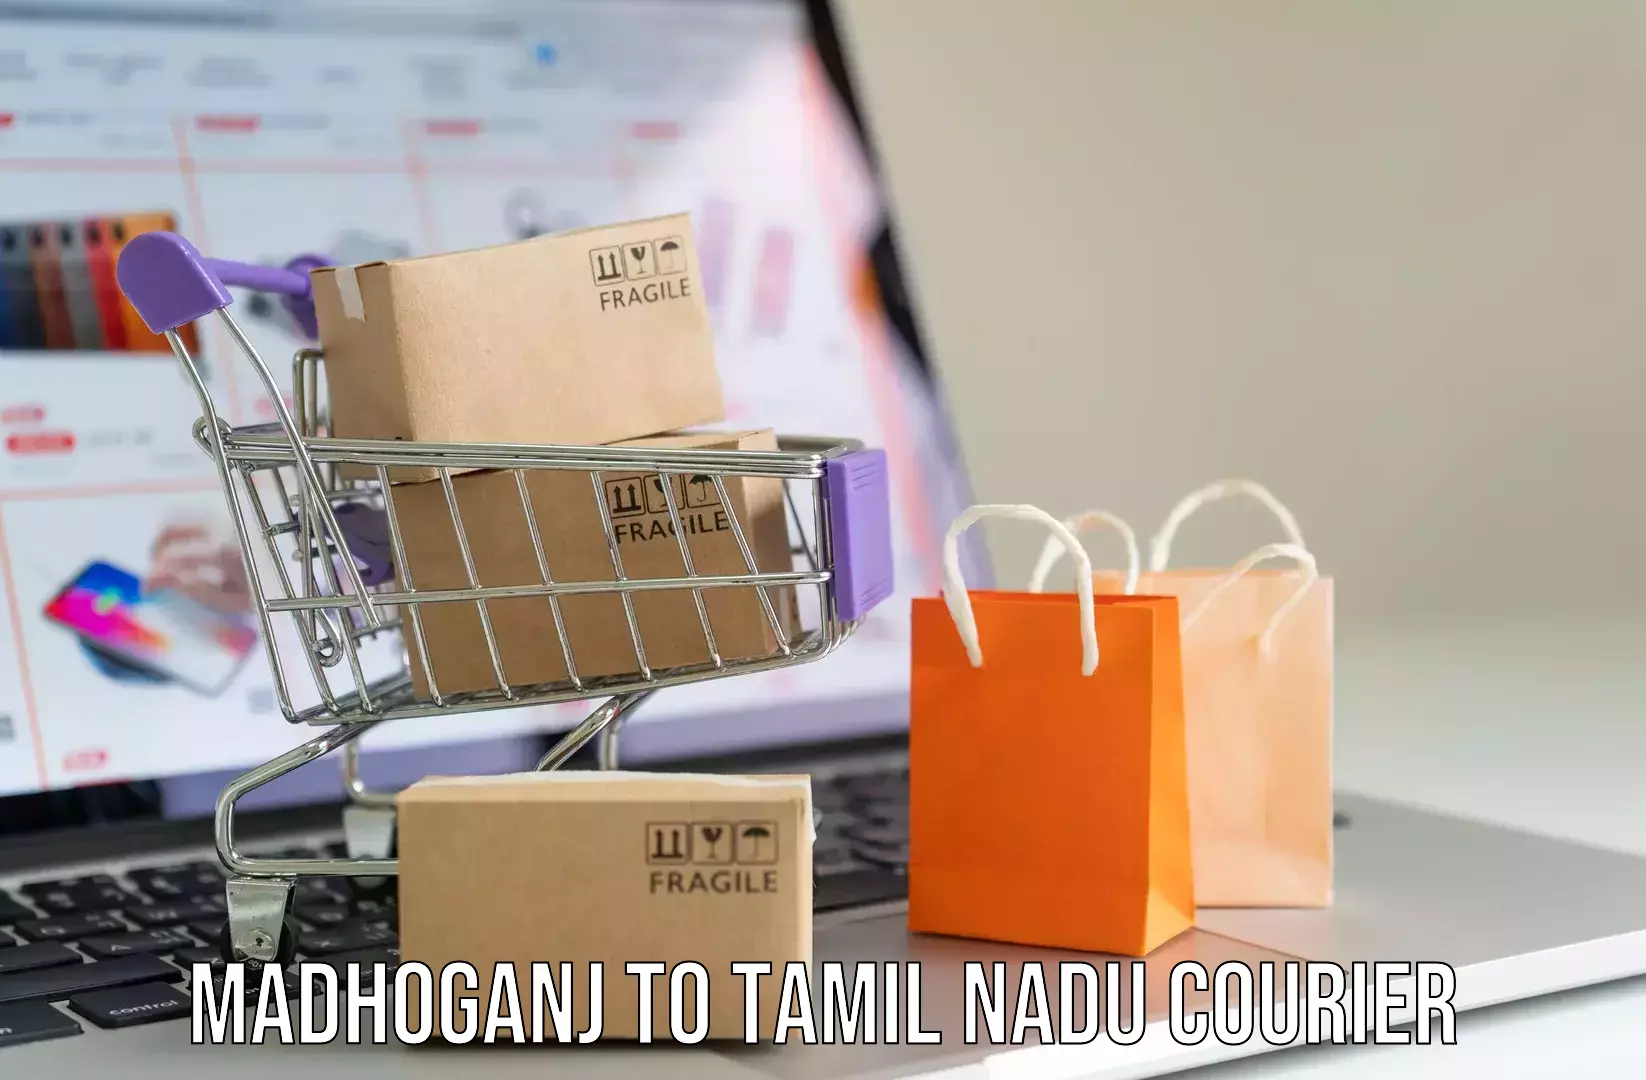 Overnight luggage courier Madhoganj to University of Madras Chennai